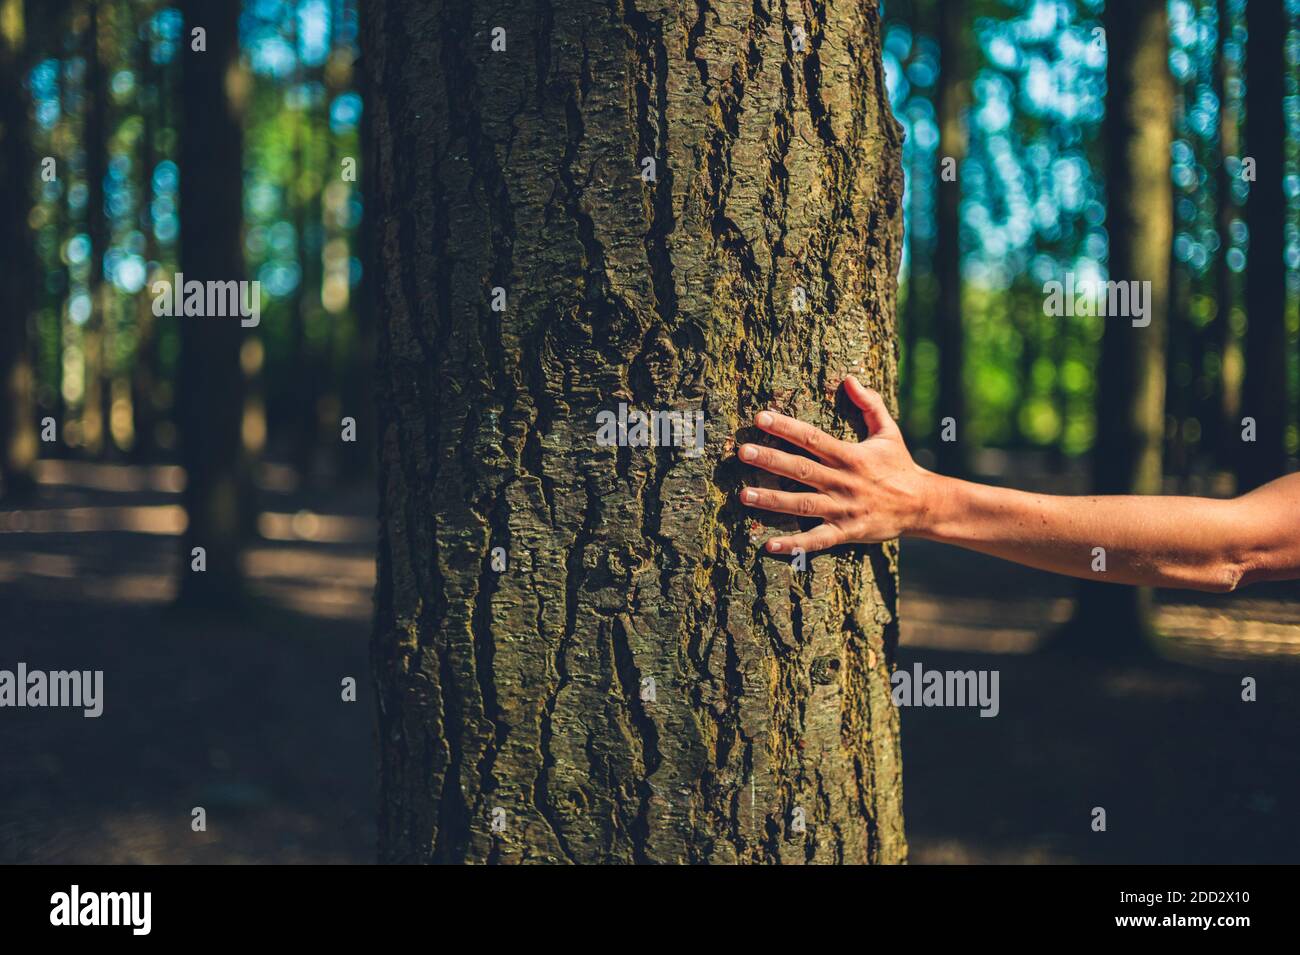 La main d'une jeune femme touchant un arbre la forêt par un jour ensoleillé Banque D'Images